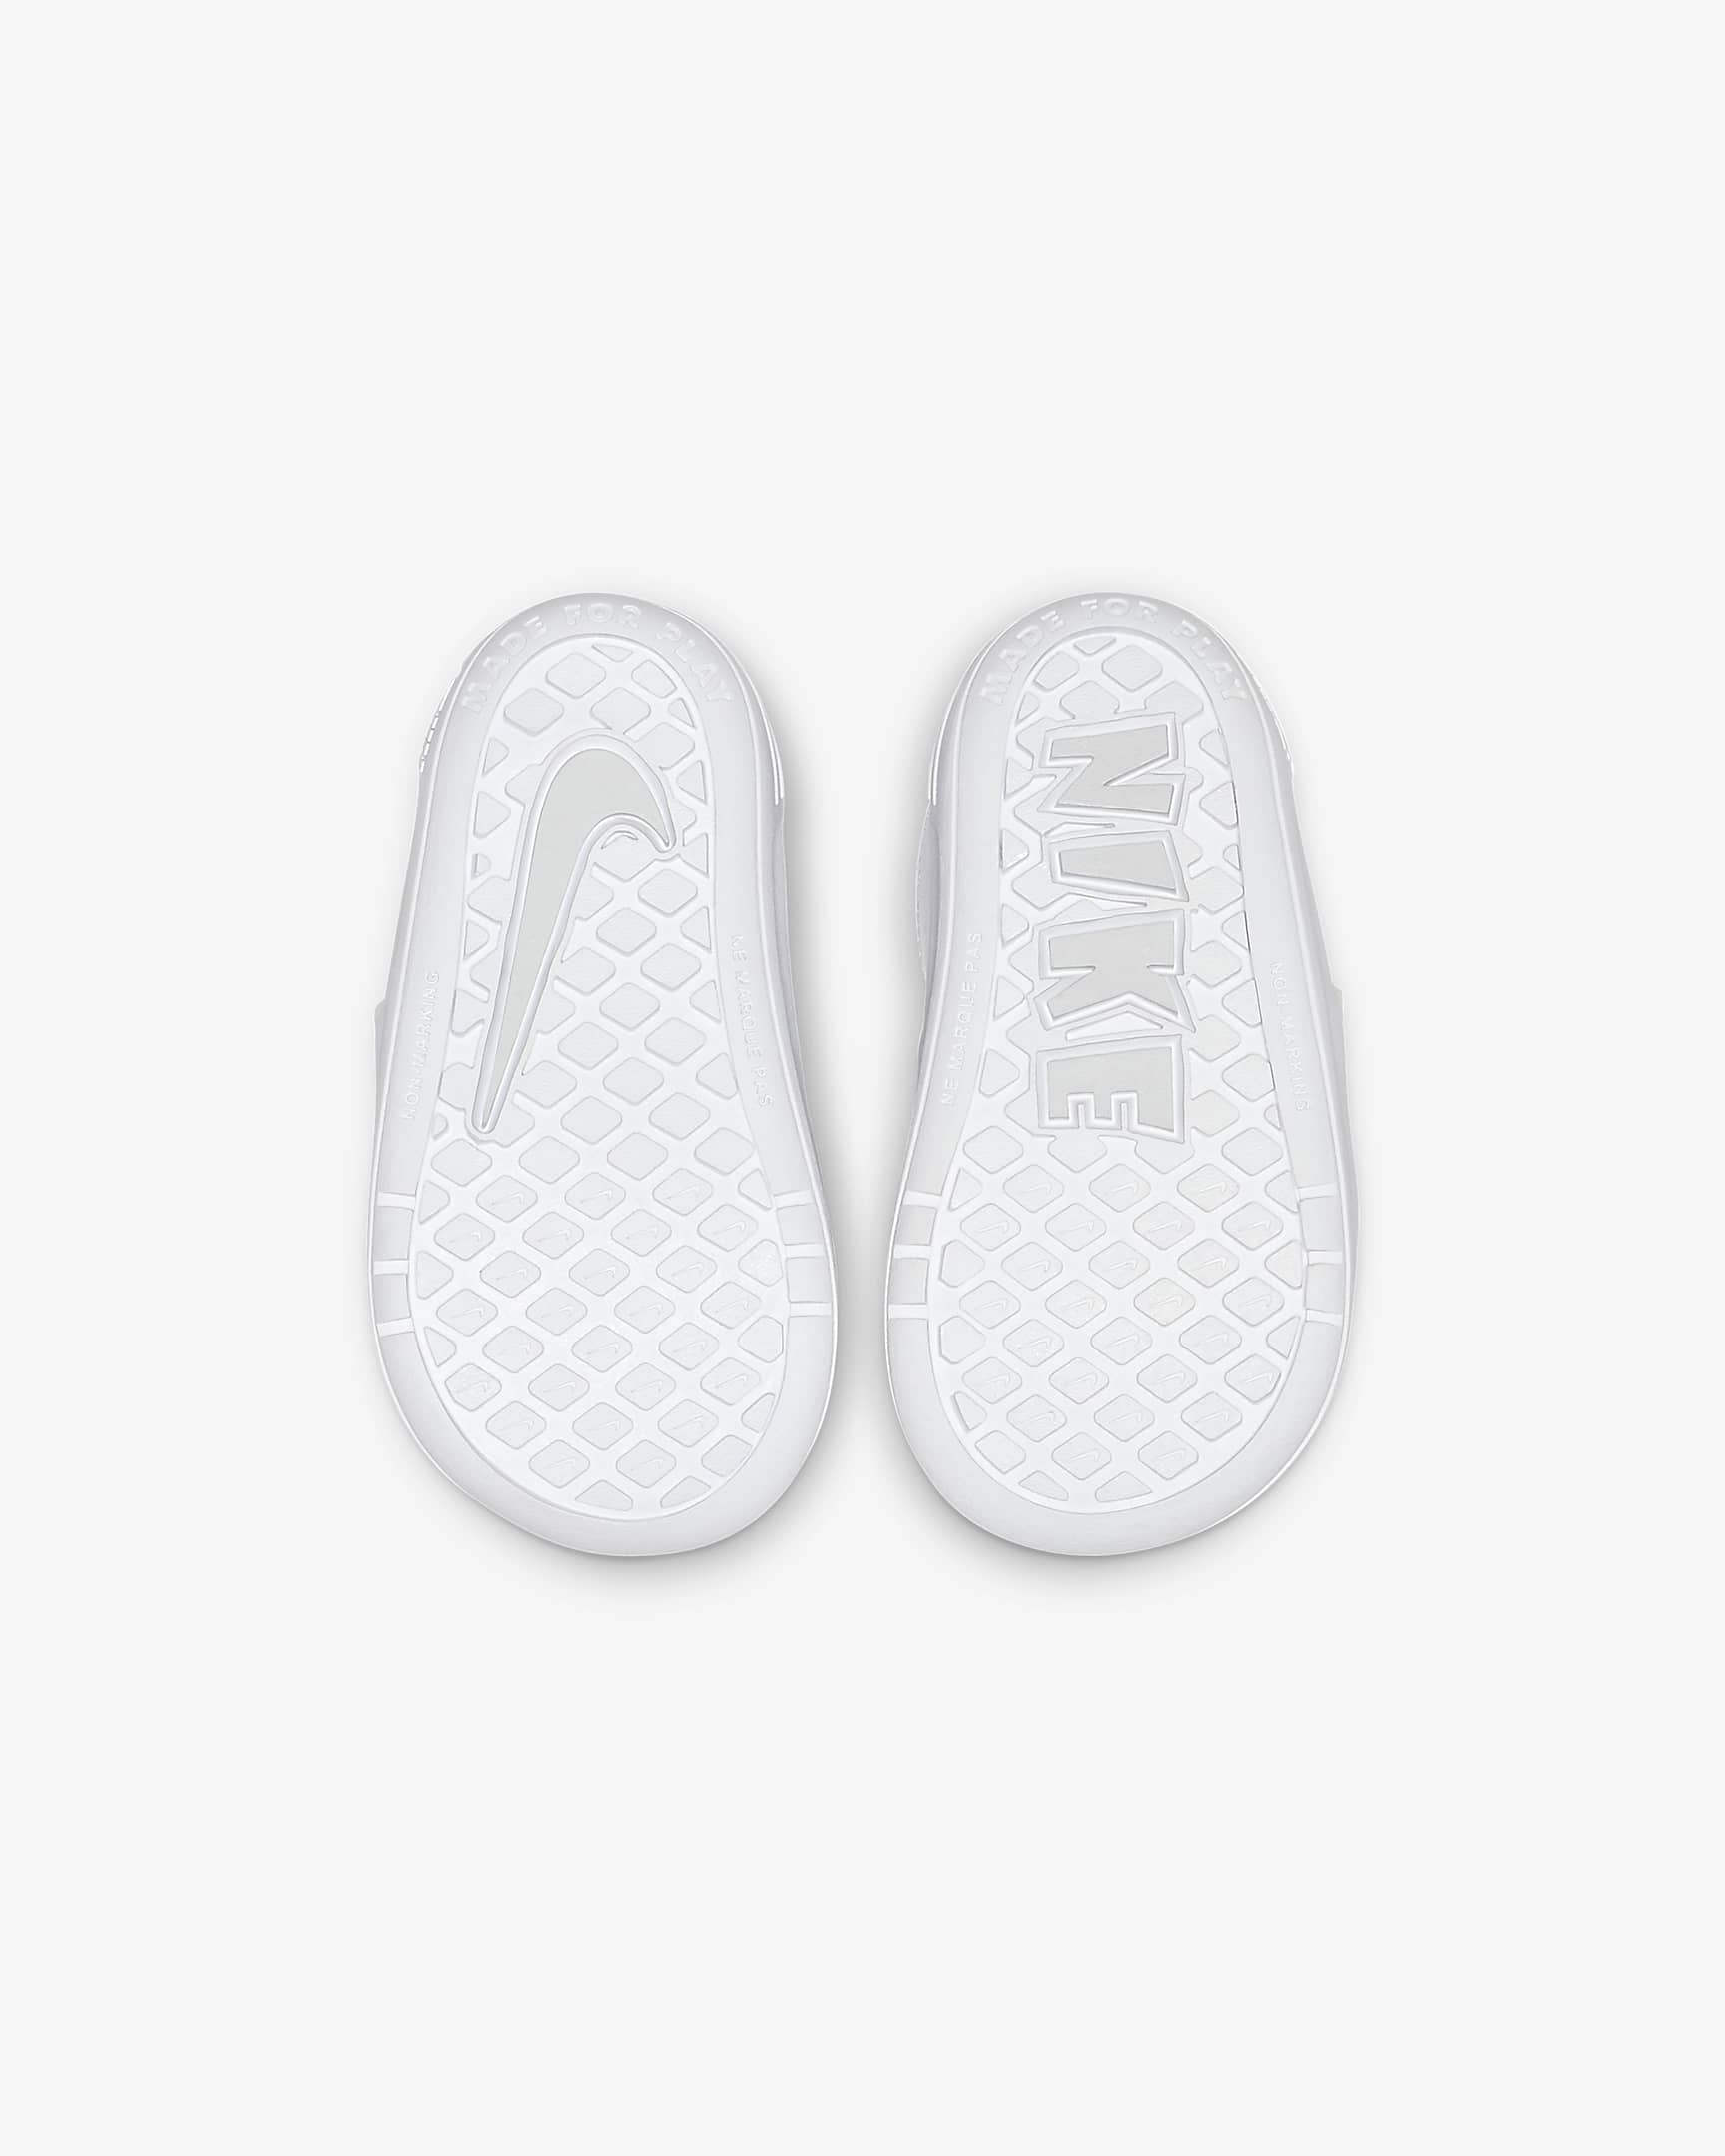 Nike Pico 5 Schuh für Babys und Kleinkinder - Weiß/Pure Platinum/Weiß